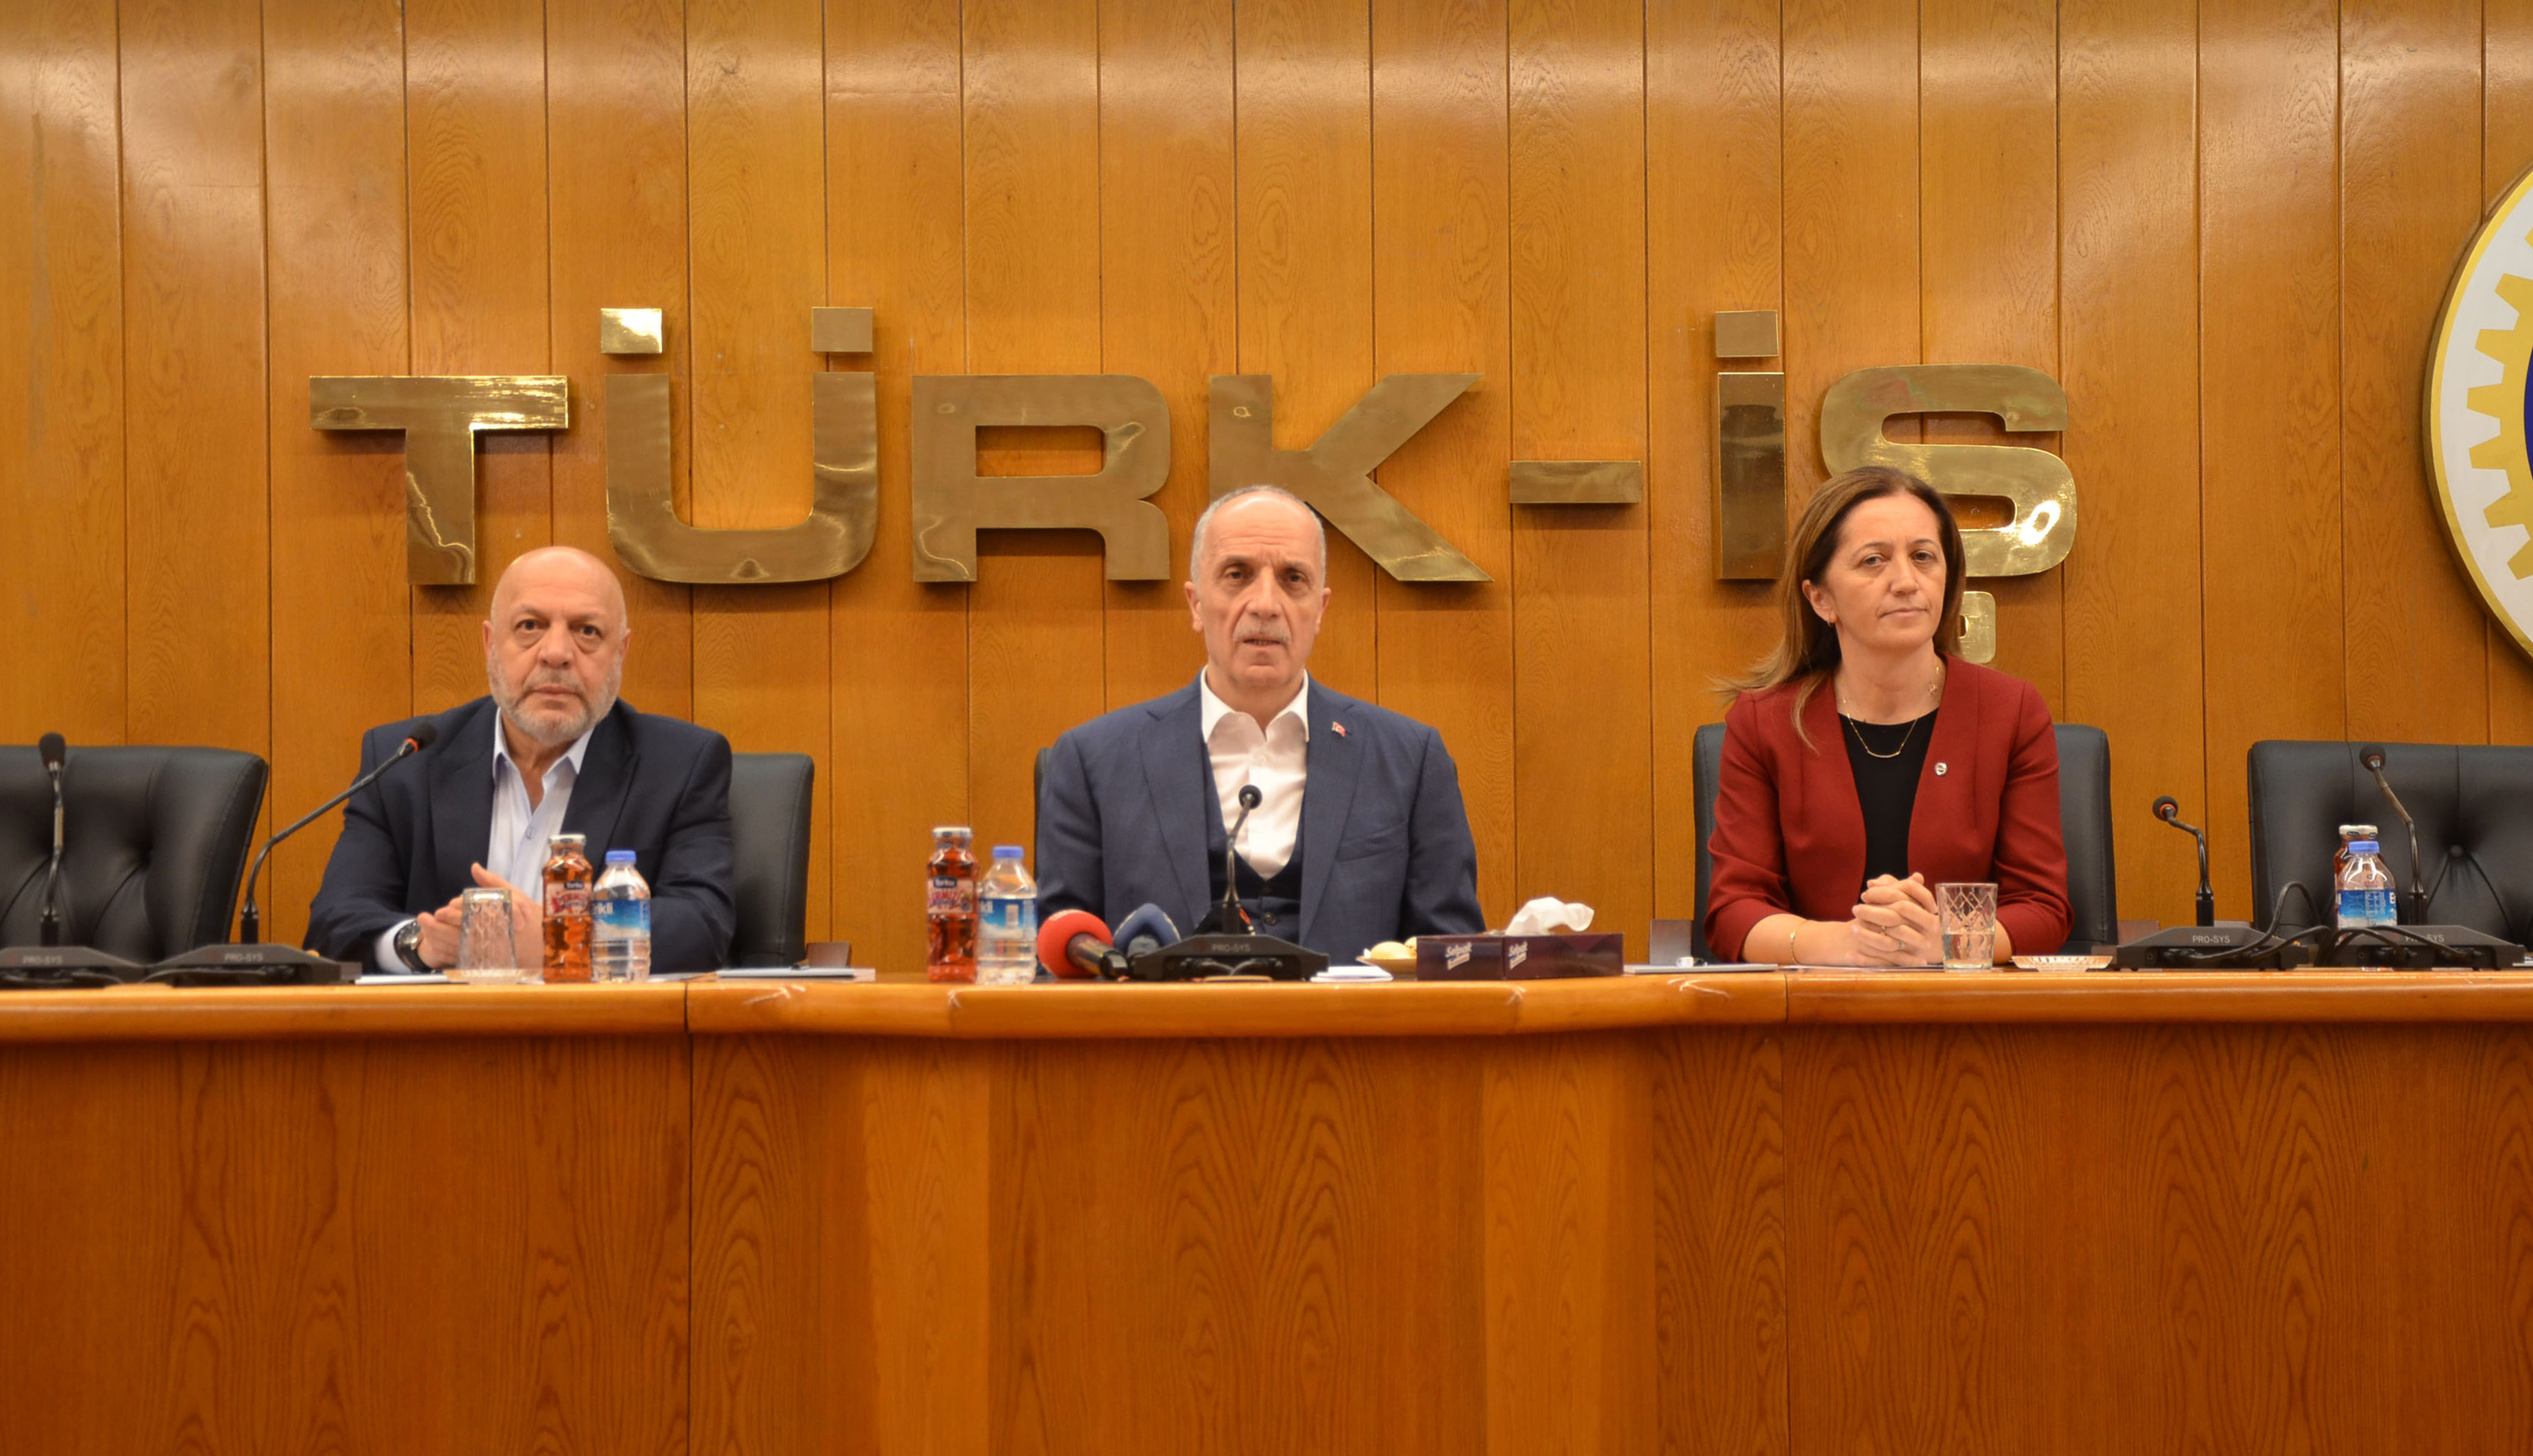  /></noscript></p>
<p>Türk-İş, Hak-İş ve DİSK, 13 Kasım 2019 tarihinde vergi adaleti için basın açıklaması gerçekleştirdi.</p>
<p>Türk-İş Genel Merkezi’nde gerçekleşen açıklamada Türk-İş Genel Başkanı Ergün Atalay, Hak-İş Genel Başkanı Mahmut Arslan, DİSK Genel Başkanı Arzu Çerkezoğlu yer aldı. </p>
<p><strong>Açıklama aynen şöyle:</strong></p>
<blockquote>
<div>TÜRK-İŞ, HAK-İŞ ve DİSK olarak işçilerin ve tüm çalışanların en önemli sorunlarından biri olan vergi yüklerinin azaltılması ve vergide adaletin sağlanması için aşağıdaki görüşlerimizi ve talepleri kamuoyunun, hükümetin ve 2020 yılı bütçesini görüşmekte olan Türkiye Büyük Millet Meclisi’ndeki siyasi partilerin ve sayın milletvekillerinin dikkatine sunuyoruz.</div>
<div> </div>
<div><strong>ADALETSİZ VERGİ SİSTEMİ KONUSUNDAKİ GÖRÜŞLERİMİZ:</strong></div>
<div> </div>
<div>Ülkemizde gelir vergisi mükelleflerinin büyük çoğunluğunu ücret geliri elde edenler oluşturuyor.</div>
<div> </div>
<div>Ücretli çalışanlar üzerinde  hem doğrudan gelir ve kazanç üzerinden alınan, hem de dolaylı olarak mal ve hizmet üzerinden alınan vergilerin ağır yükü bulunuyor.</div>
<div> </div>
<div>Kamu ve özel sektörde çalışan milyonlarca işçi ve memurun gelir vergileri kaynağından kesinti yapılarak ödeniyor.</div>
<div> </div>
<div>Ücretlerimizden kesilen vergiler,  Gelir Vergisi hasılatının önemli bir kısmını oluşturuyor.</div>
<div> </div>
<div>Bugün ülkemizde uygulanan vergi politikaları nedeniyle, işçiler üzerindeki ağır bir vergi baskısı bulunuyor.</div>
<div> </div>
<div>İşçinin eline geçen net ücret, vergi kesintileri nedeniyle, yılbaşına göre geçen sürede giderek geriliyor.</div>
<div> </div>
<div>Ücretli çalışanların net ücreti, bir yandan enflasyon nedeniyle satın alma gücünü kaybetmesiyle, diğer yandan artan vergi oranı nedeniyle azalıyor.</div>
<div> </div>
<div>Bu vergi düzeni adil değildir…</div>
<div> </div>
<div>Sosyal adalete, Anayasanın sosyal hukuk devleti ilkesine uygun değildir…</div>
<div> </div>
<div>Anayasayla bağdaşmayan bu anlayış sürdürülebilir değildir…</div>
<div> </div>
<div>TBMM’ye sunulan vergi düzeninde yeni değişiklikleri içeren yasa teklifi emekçilerin beklentilerini karşılamıyor, vergi adaletsizliğini ortadan kaldırmıyor.</div>
<div> </div>
<div>Bu teklifte, ücretliler lehine olan ‘ayırım ilkesi’ yaklaşımı yine gözetilmiyor.</div>
<div> </div>
<div>Çalışanların 2005 yılı gelir vergisi tarifesine uygulanan yüzde 15-20-25-30-35 gelir vergisi oranı, 2006 yılından bu yana yüzde 15-20-27-35 olarak maalesef daha yüksek uygulanıyor.</div>
<div> </div>
<div>2005 yılında gelir vergisi tarifesi brüt asgari ücretin 13,5 katı iken, günümüzde 7 katına denk gelmektedir. Çalışanlar her yıl daha fazla vergi ödemek zorunda kalıyor.</div>
<div> </div>
<div>Bu uygulama sosyal adaletle bağdaşmıyor.</div>
<div> </div>
<div>Bütün taleplere rağmen gelir vergisi tarifesi ücretliler lehine iyileştirilmiyor.</div>
<div> </div>
<div><strong>VERGİ ADALETİ İÇİN TALEPLERİMİZ:</strong></div>
<div> </div>
<div>Daha adil bir vergi sistemi için TÜRK-İŞ, HAK-İŞ ve DİSK olarak ortak taleplerimiz şunlardır:</div>
<div> </div>
<div>• Emek üzerindeki vergi yükünün azaltılması ve verginin geniş kitlelere adil bir şekilde yansımasının sağlanması gerekmektedir. O nedenle, gelir vergisi tarife basamakları ve oranları acil olarak çalışanlar lehine güncellenmelidir.</div>
<div>• Bütün ücretlerden asgari ücrete tekabül eden kısım vergiden muaf olmalıdır. Asgari ücret sonrası ilk vergi basamağı için uygulanacak oran yüzde 10 olmalıdır.</div>
<div>• Düşük gelirli hane halkının tüketiminde önemli payı olan gıda ve alkolsüz içecekler, eğitim, sağlık ile giyim ve ayakkabı grubu için halen indirimli vergi oranı uygulanmaktaysa da düşük gelirli ailelerin tüketim vergi payını azaltmak için bu oranın daha da aşağıya çekilmesi sağlanmalıdır.</div>
<div>• Ücret geliri elde eden kişilerin giderlerini ödedikleri vergiden indirememelerinin doğurduğu anayasal eşitlik ilkesine aykırılık halini karşılayabilmek için, tıpkı gayrimenkul sermaye iratlarında olduğu gibi, yüzde 25’lik götürü gider indiriminin yapılmasını öneriyoruz.</div>
<div>• İşçinin kendisi ve diğer aile fertleri için yapmak zorunda olduğu gıda, barınma, giyim, ısınma, elektrik, sağlık, eğitim gibi giderlerinin gelir vergisi matrahından mahsup edilmelidir. Zira benzer harcamalar, beyanname usulü ile vergiye tabii mükellefler tarafından gelir vergisi matrahından mahsup edilebilmektedir. </div>
<div>• Bireysel doğalgaz, elektrik, su, ulaşım ve iletişim hizmetleri tüketiminden alınan KDV yüzde 1’e düşürülmelidir.</div>
<div>• Temel tüketim mallarından alınan KDV sıfırlanmalıdır.</div>
<div> </div>
<div>Talebimiz ve beklentimiz, vergide sağlanacak düzenlemelerin,  ücretli çalışanlar aleyhine olan haksız ve adaletsiz durumu ortadan kaldırması ve emekçiler lehine iyileştirme yapılmasıdır.</div>
<div> </div>
<div>Bu ülkenin sağladığı kaynakları kullanarak gelir ve servet elde edenler, topluma karşı yükümlülüklerini yerine getirmeli ve kazançları oranında vergi ödemeleri sağlanmalıdır.</div>
<div> </div>
<div>Adil bir gelir dağılımını sağlayan, aile yükümlülüklerini dikkate alan, vergi adaletini ve eşitliğini hedefleyen ve kayıtdışı ekonominin önlenmesi amacıyla vergi oranlarında indirime gitmeyi savunan bütüncül bir gelir vergisi sistemine yönelik politikaların geliştirilmesini öncelikli hedefler arasında görmekteyiz. Vergi oranlardaki yükselme kayıt dışı çalışmayı artıracaktır.</div>
<div> </div>
<div>Adaletsiz vergi düzeninin değiştirilmesini, emekçilerin vergi yükü altında ezilmesine son verilmesini talep ediyoruz.</div>
<div> </div>
<div>Sosyal adalete, Anayasanın sosyal hukuk devleti ilkesine uygun bir vergi sistemi talep ediyoruz.</div>
</blockquote>
<p></br></p>
<p><img decoding=